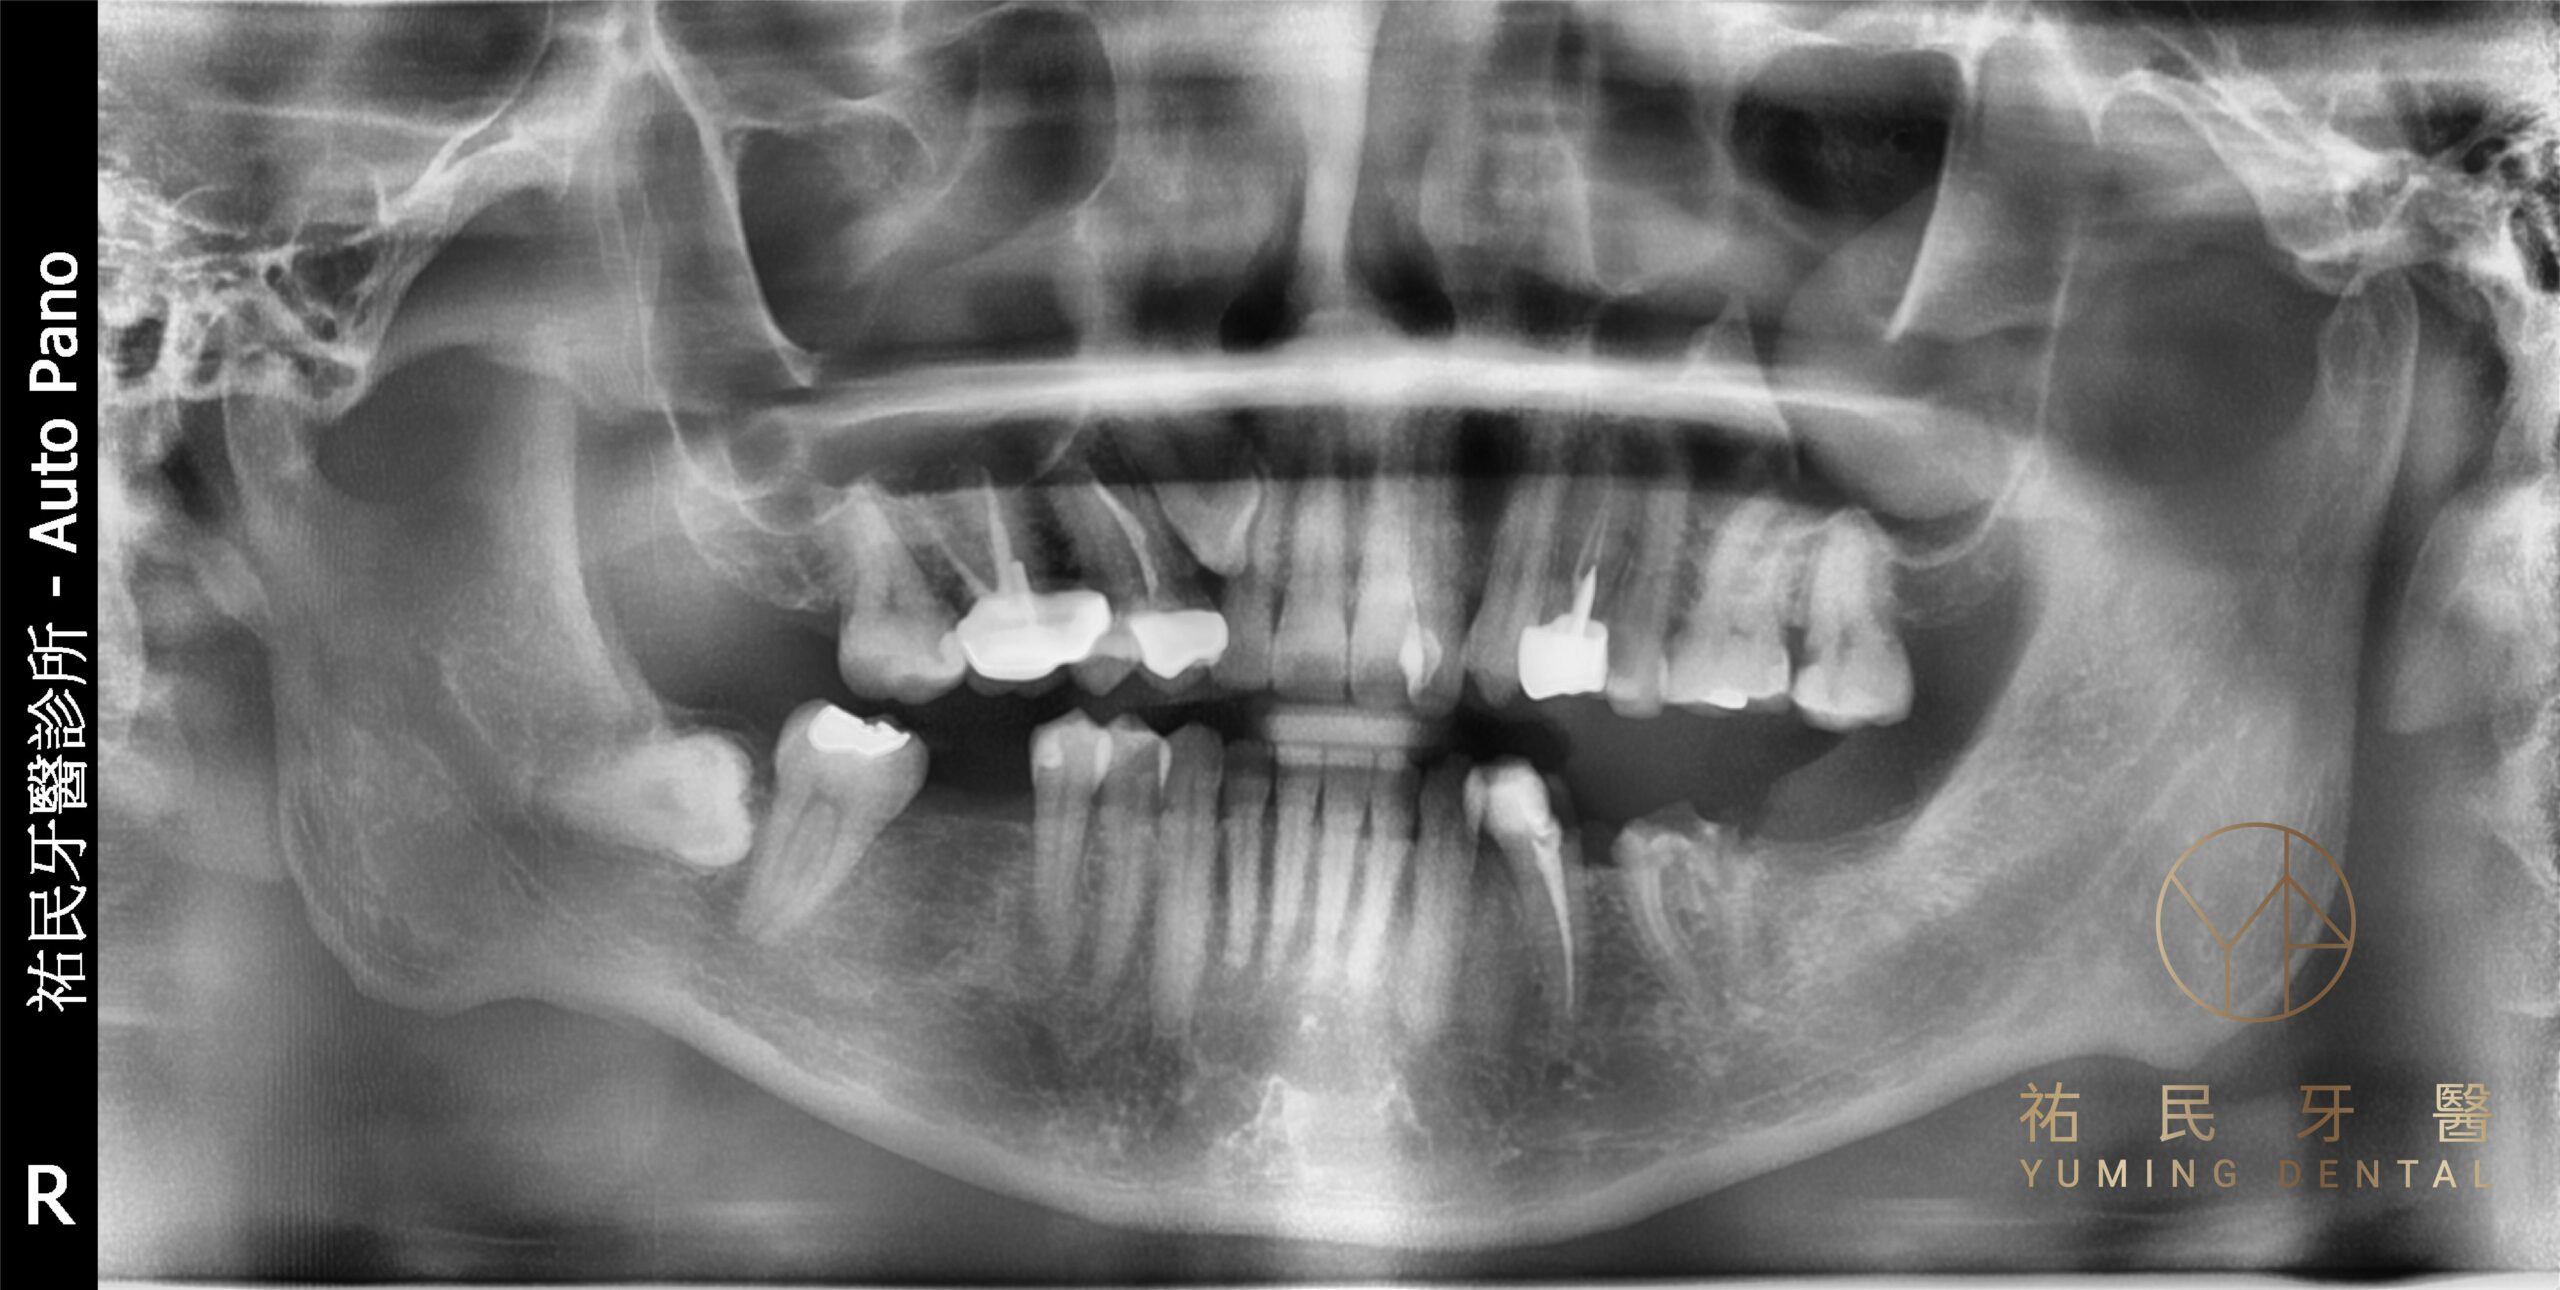 缺牙不補會造成咬合不正、牙齒傾斜、咀嚼困難會進而影響身體健康